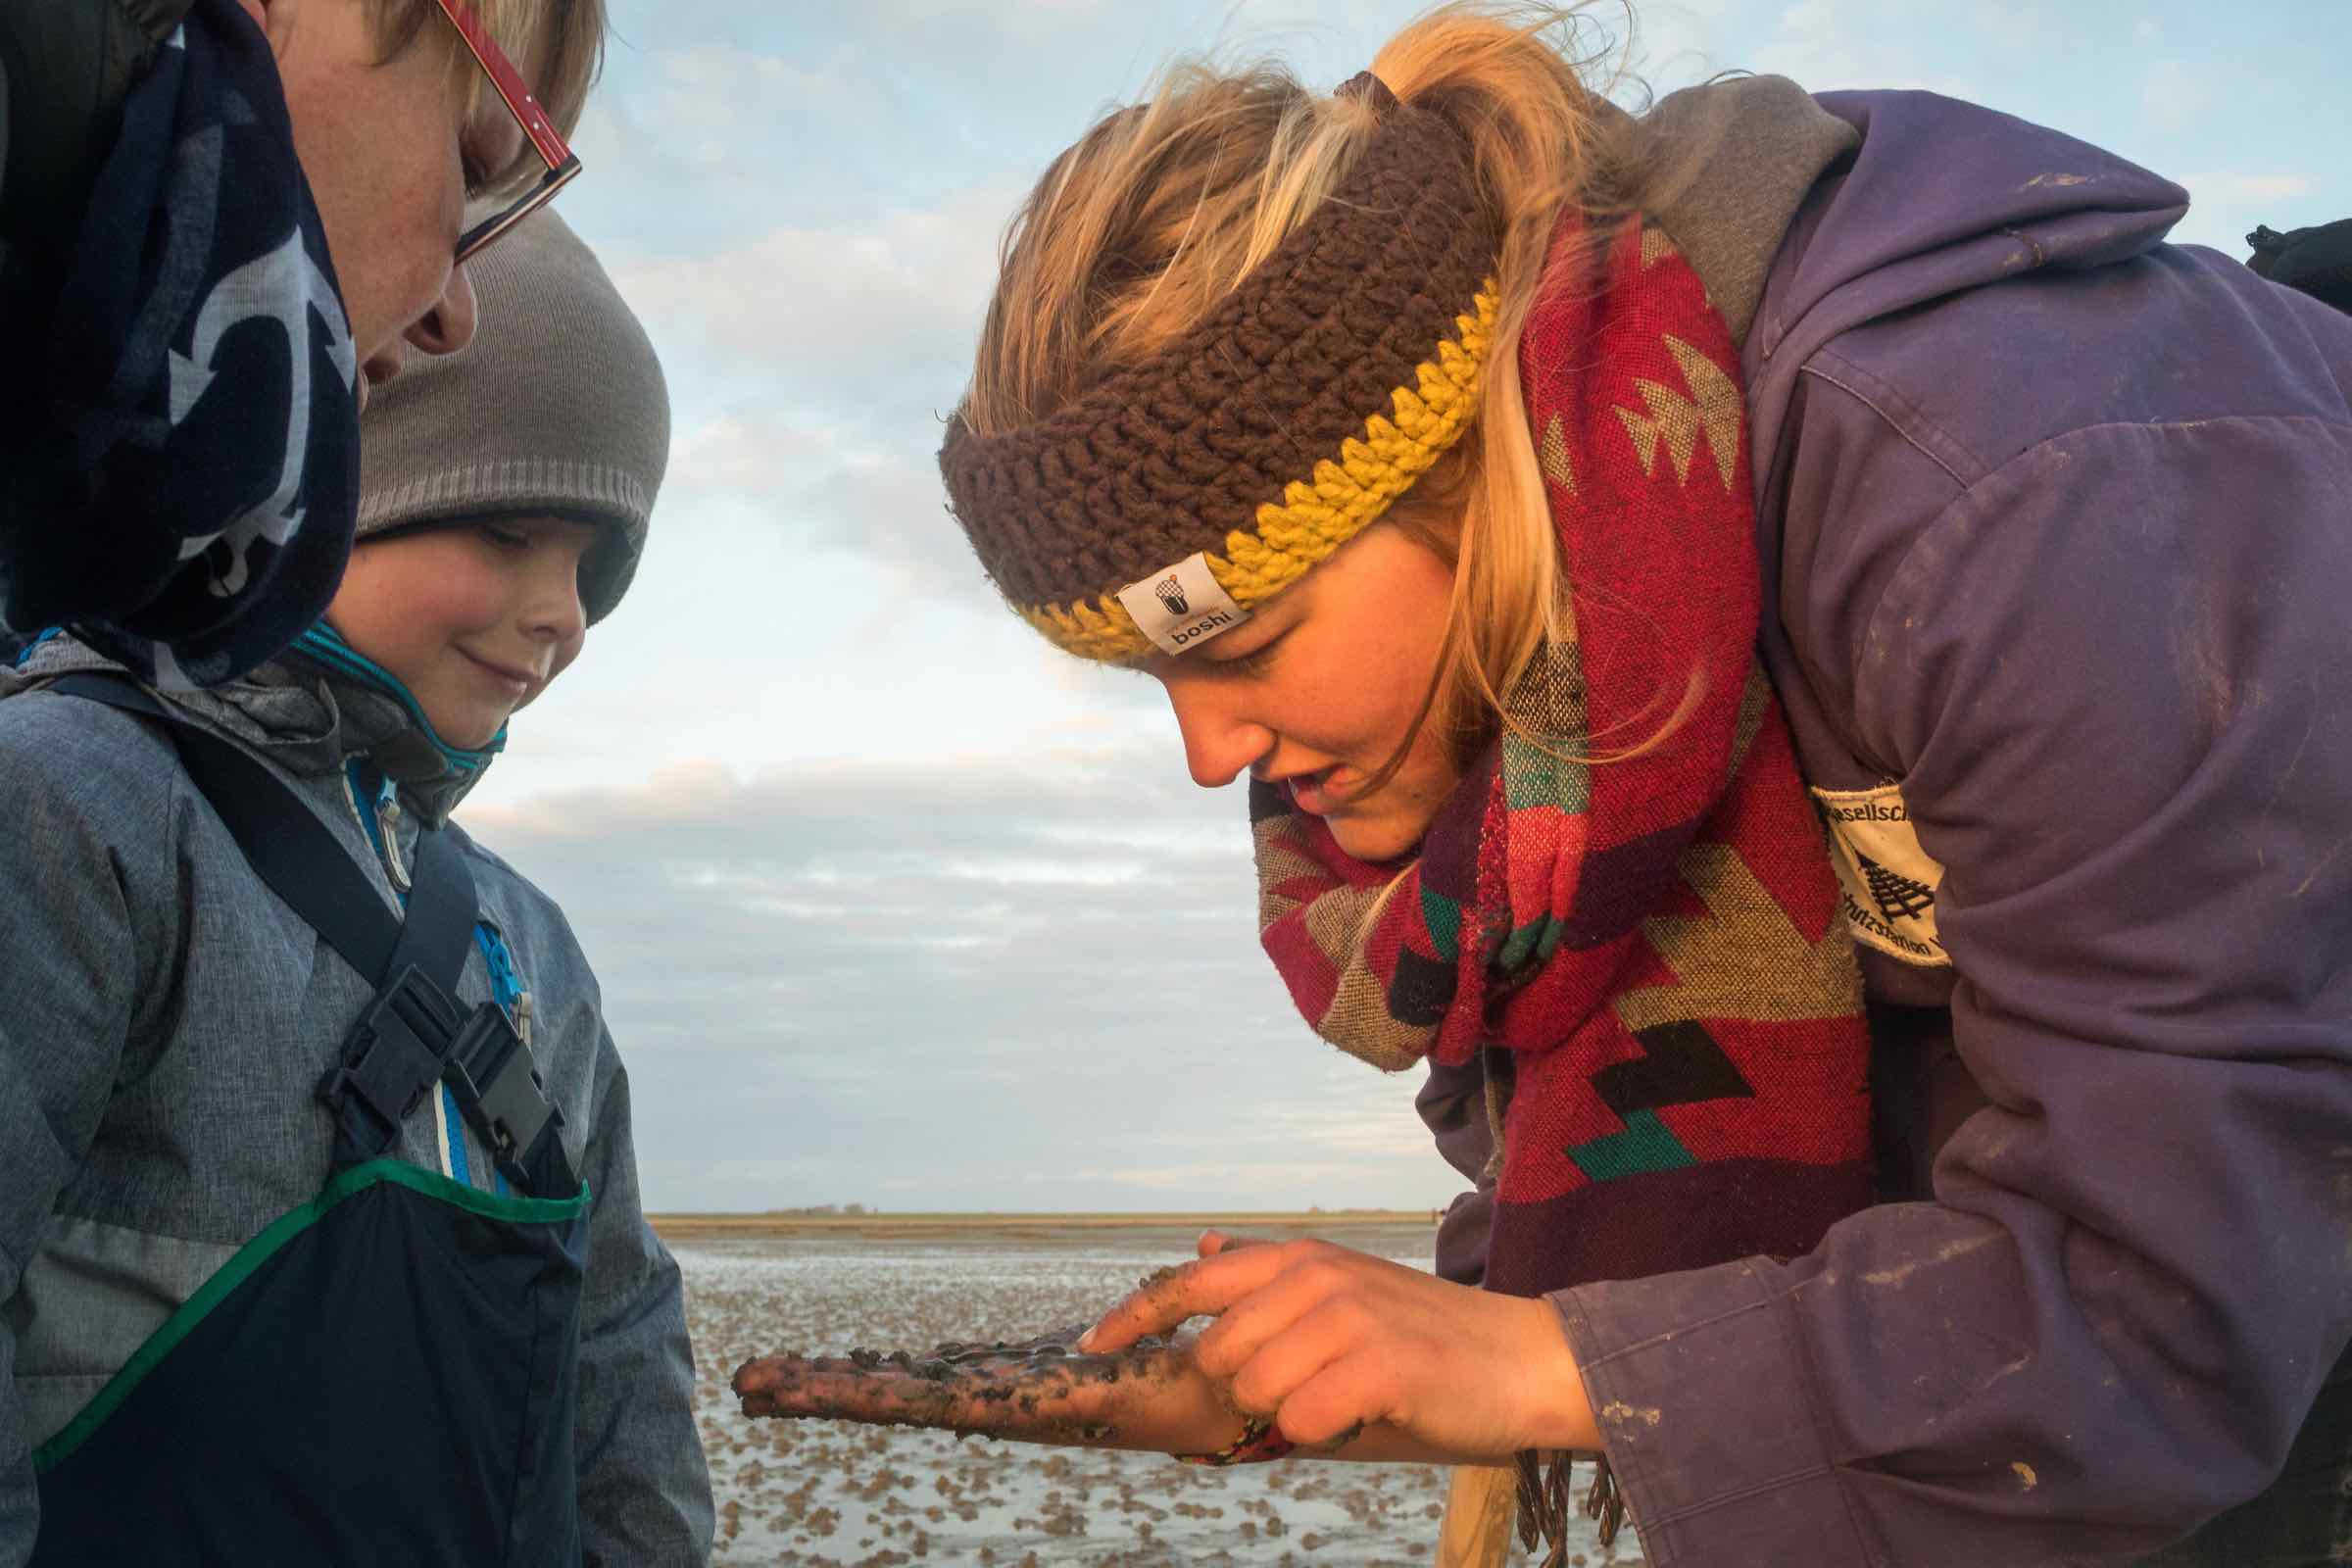 Ein Watterlebnis für Familien mit Kindern (ab 3 Jahren). Findet mit uns zwischen Wattwurmhaufen und Krabben den Schatz im Weltnaturerbe Wattenmeer!